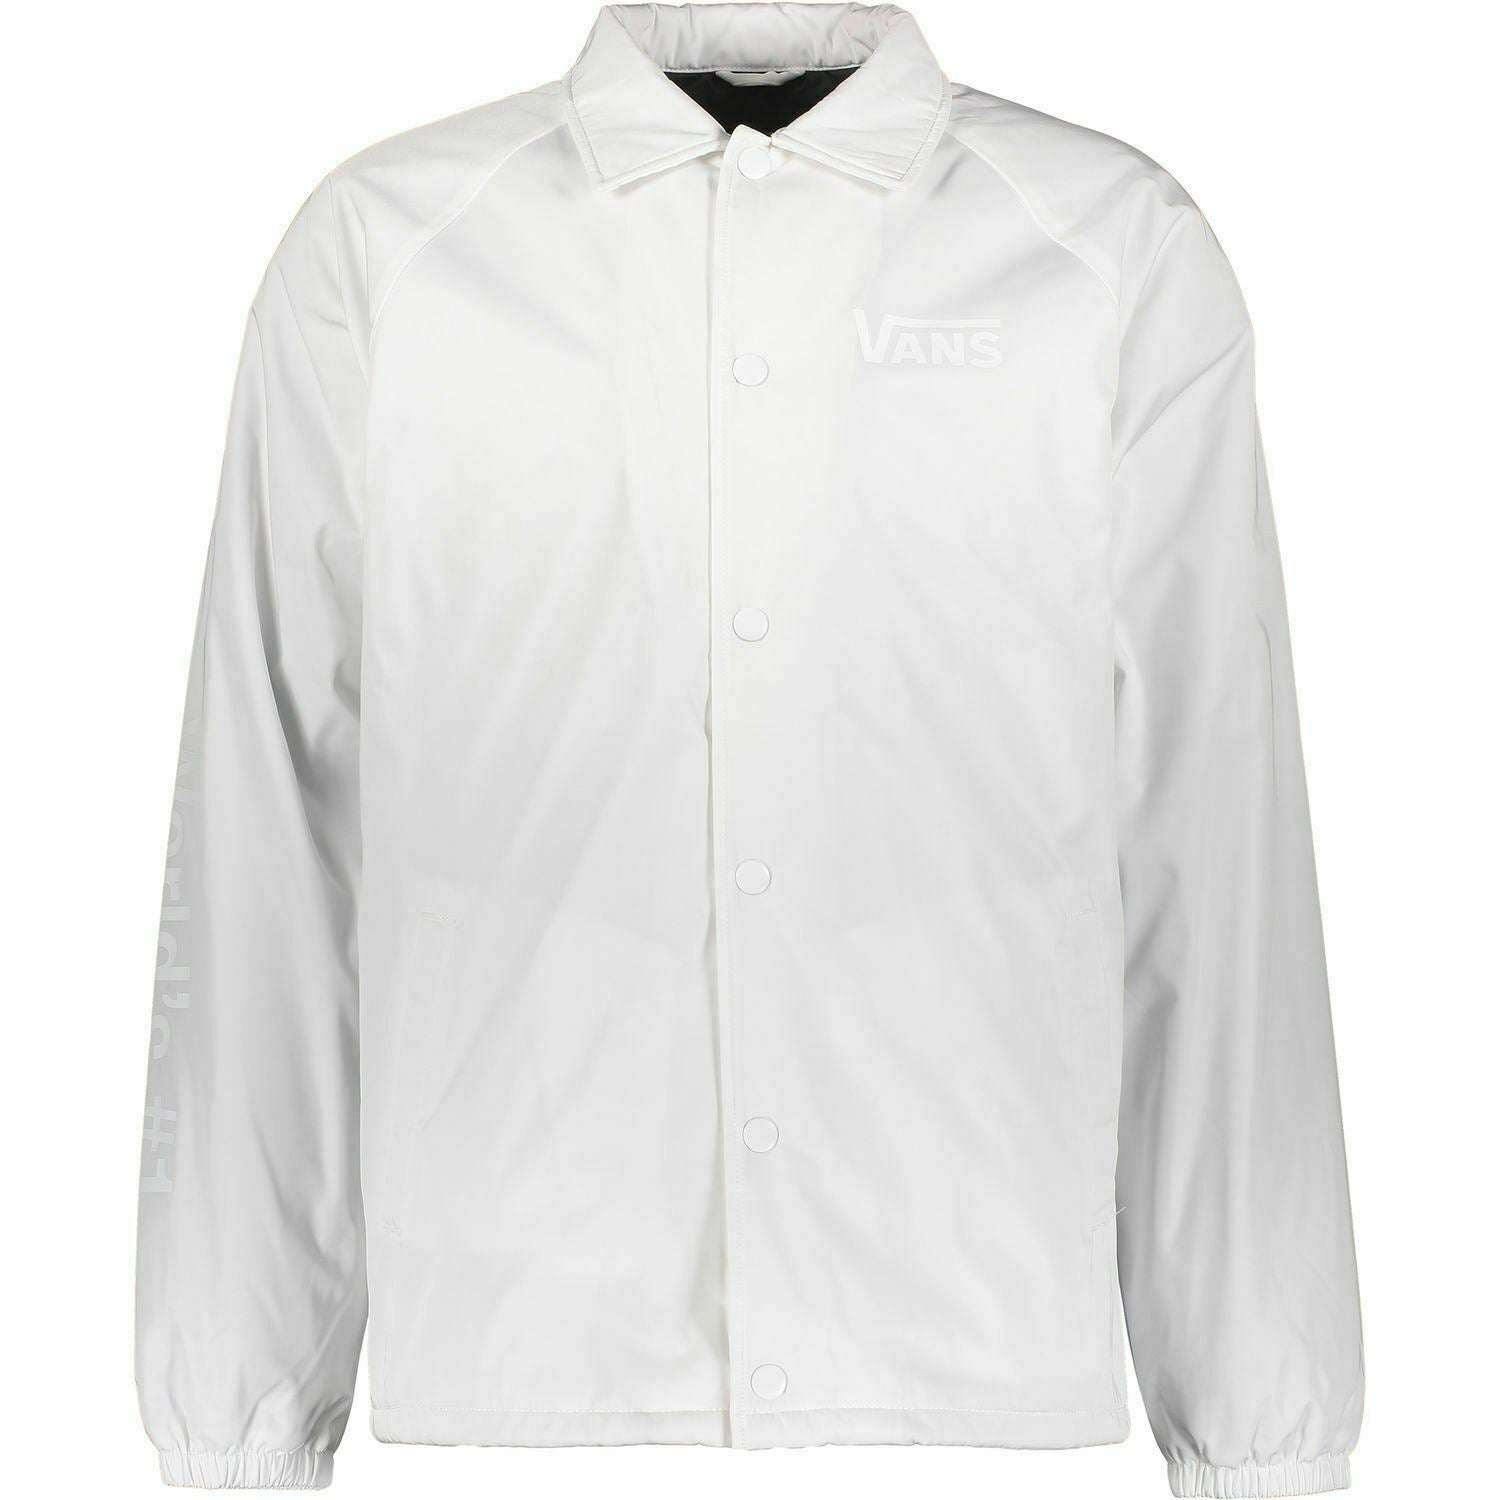 VANS Men's TORREY DELUXE Jacket, White, size XS